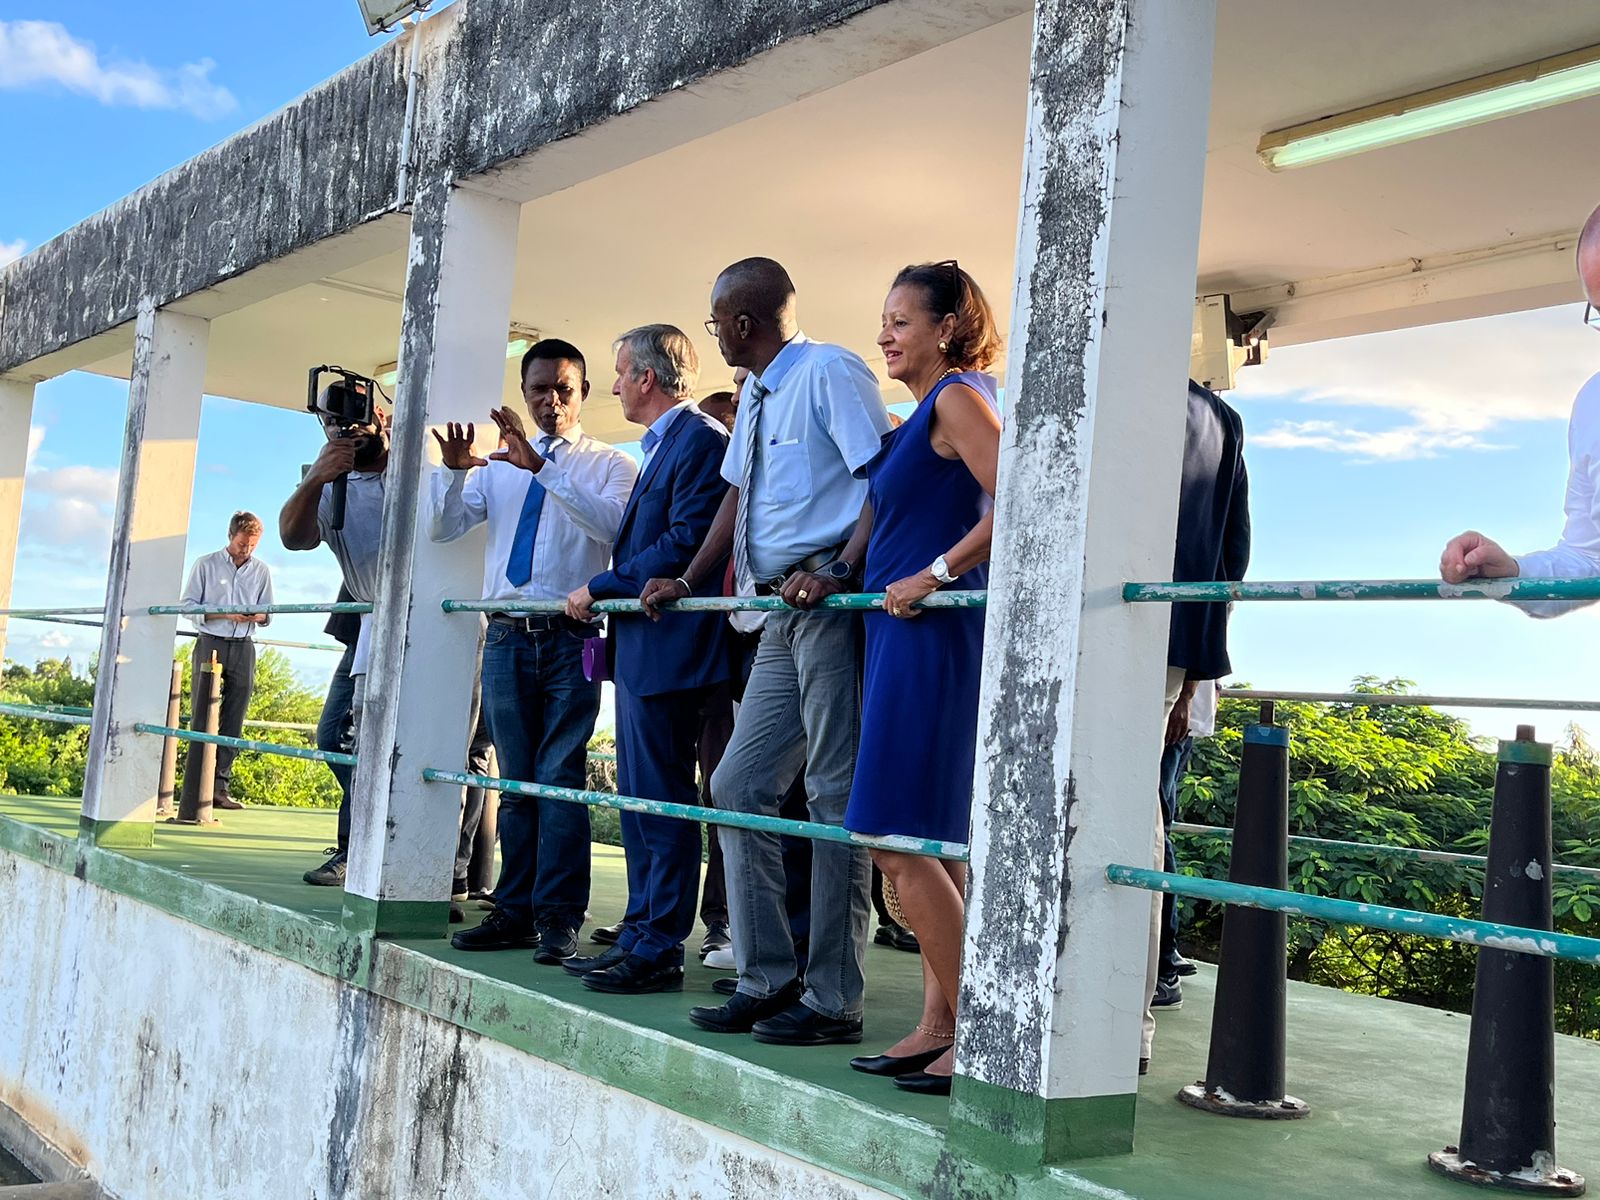     Traitement de l’eau en Guadeloupe : un plan d'investissement sera mis en place 

